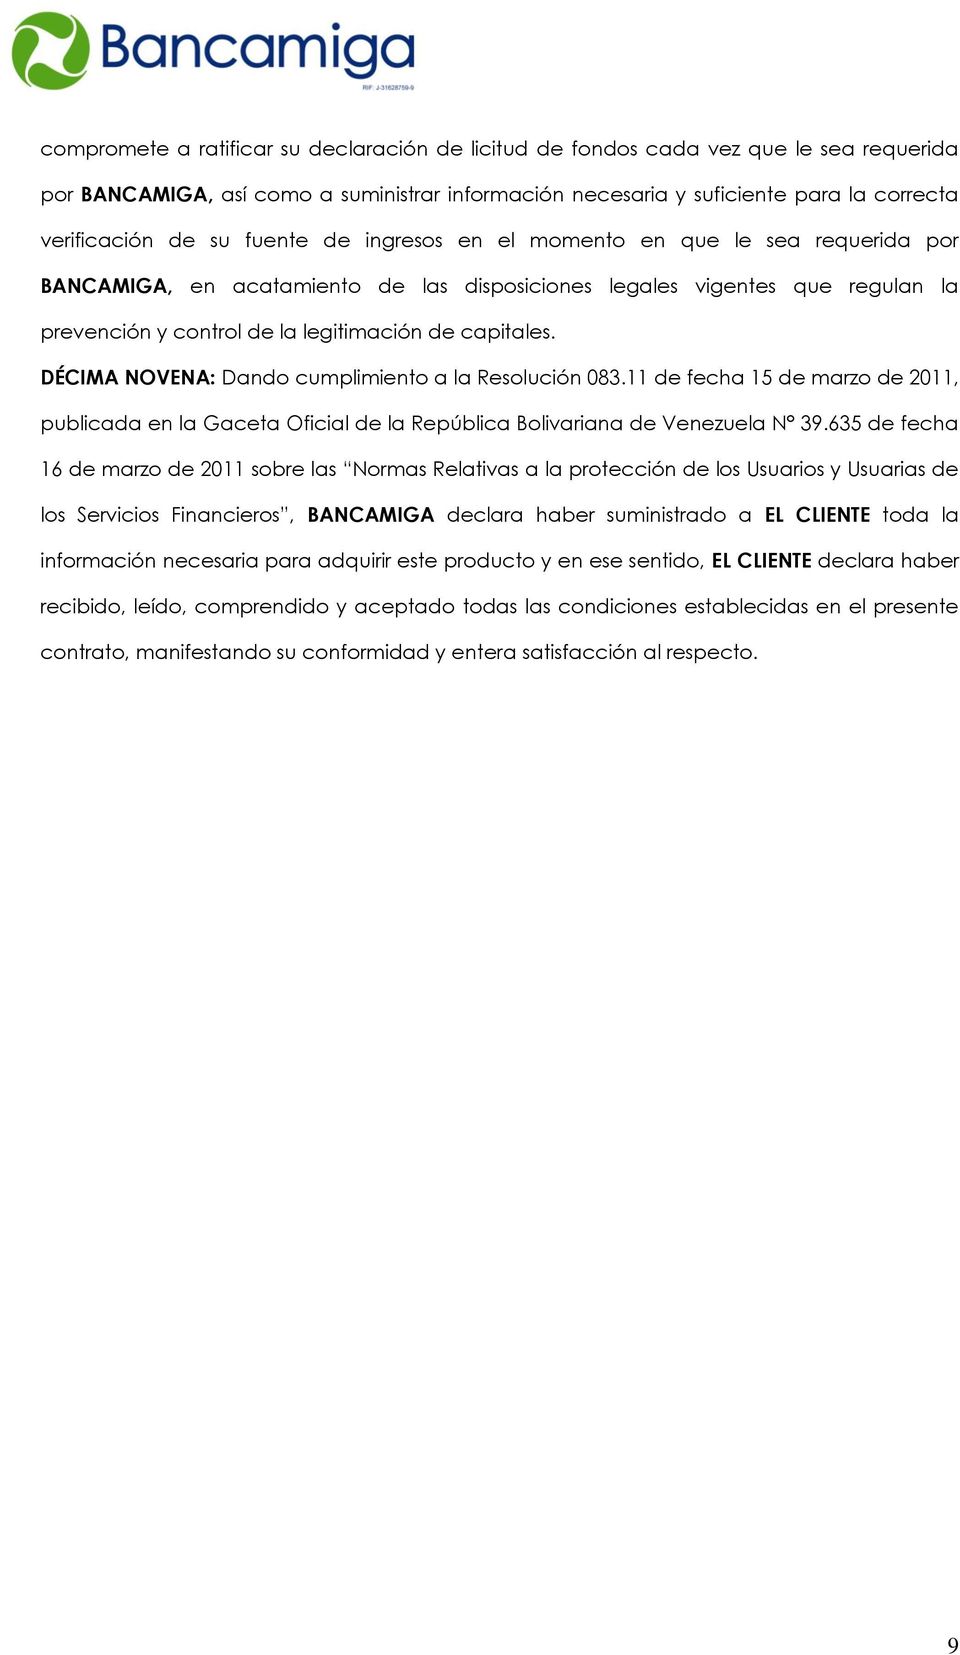 DÉCIMA NOVENA: Dando cumplimiento a la Resolución 083.11 de fecha 15 de marzo de 2011, publicada en la Gaceta Oficial de la República Bolivariana de Venezuela N 39.